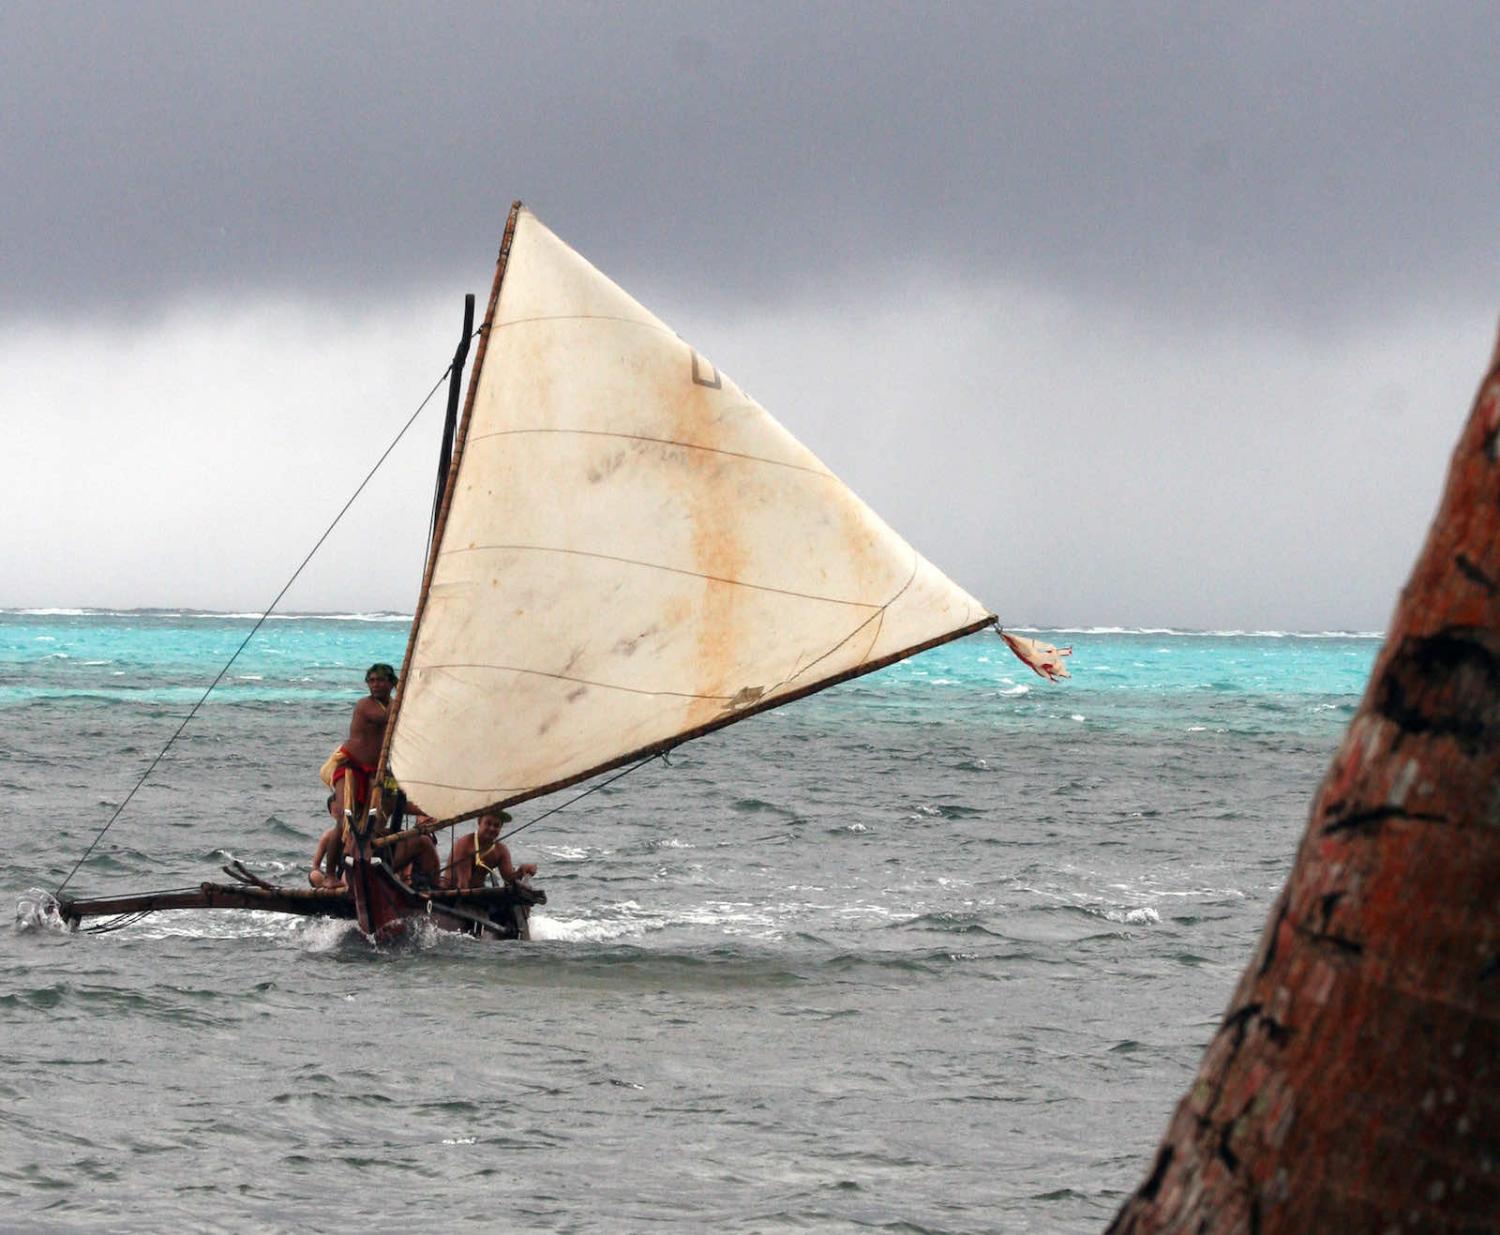 Ocean return, Yap, Micronesia (Joyce McClure/Flickr)